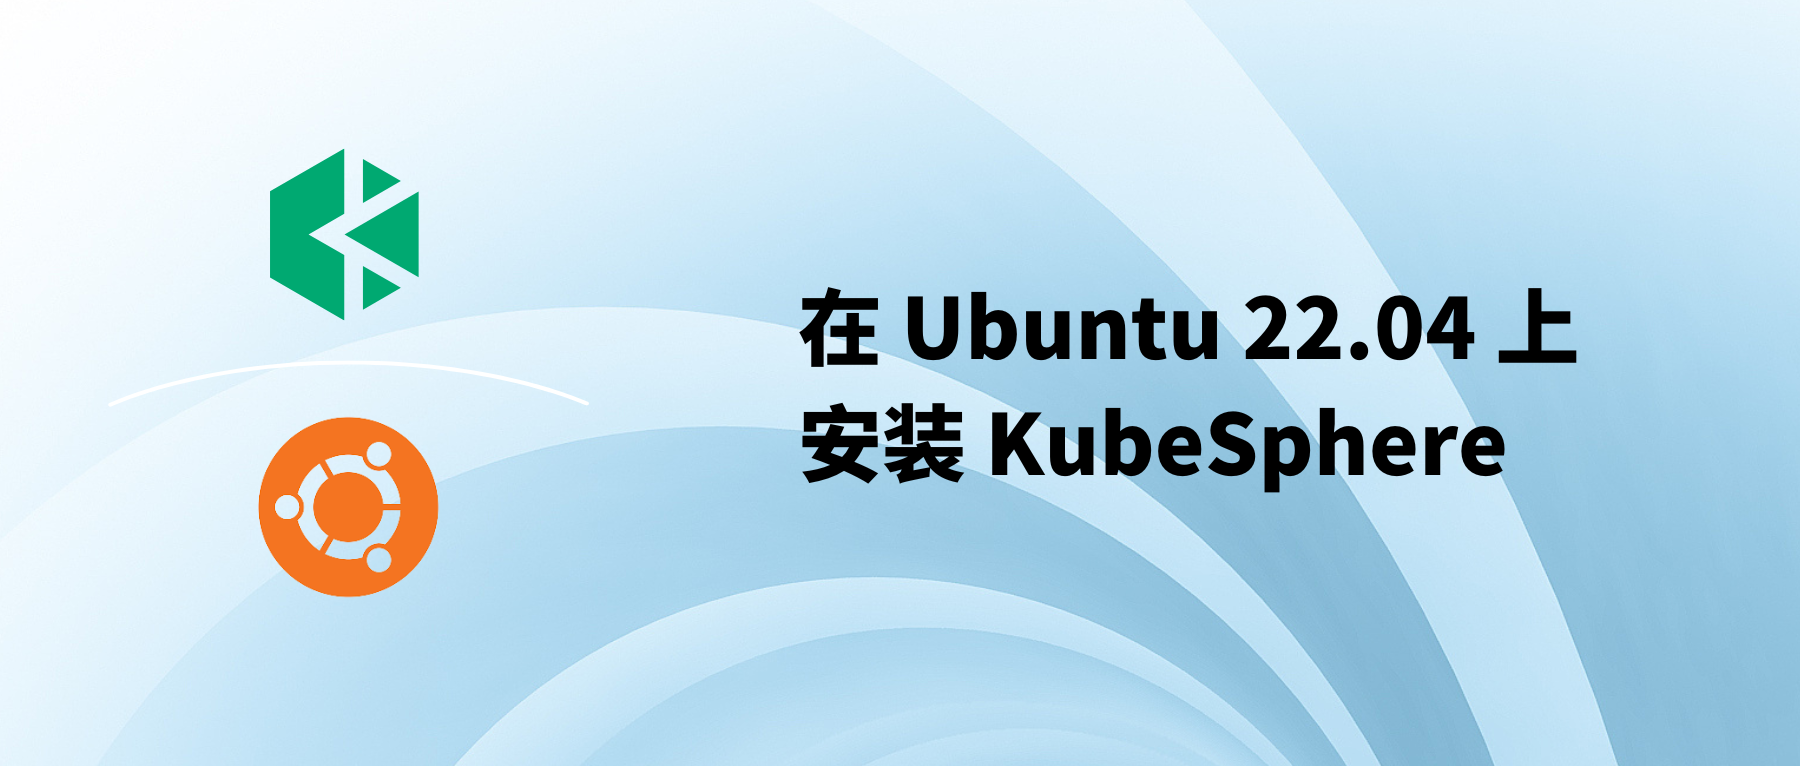 在 Ubuntu 22.04 上安装 KubeSphere 实战教程